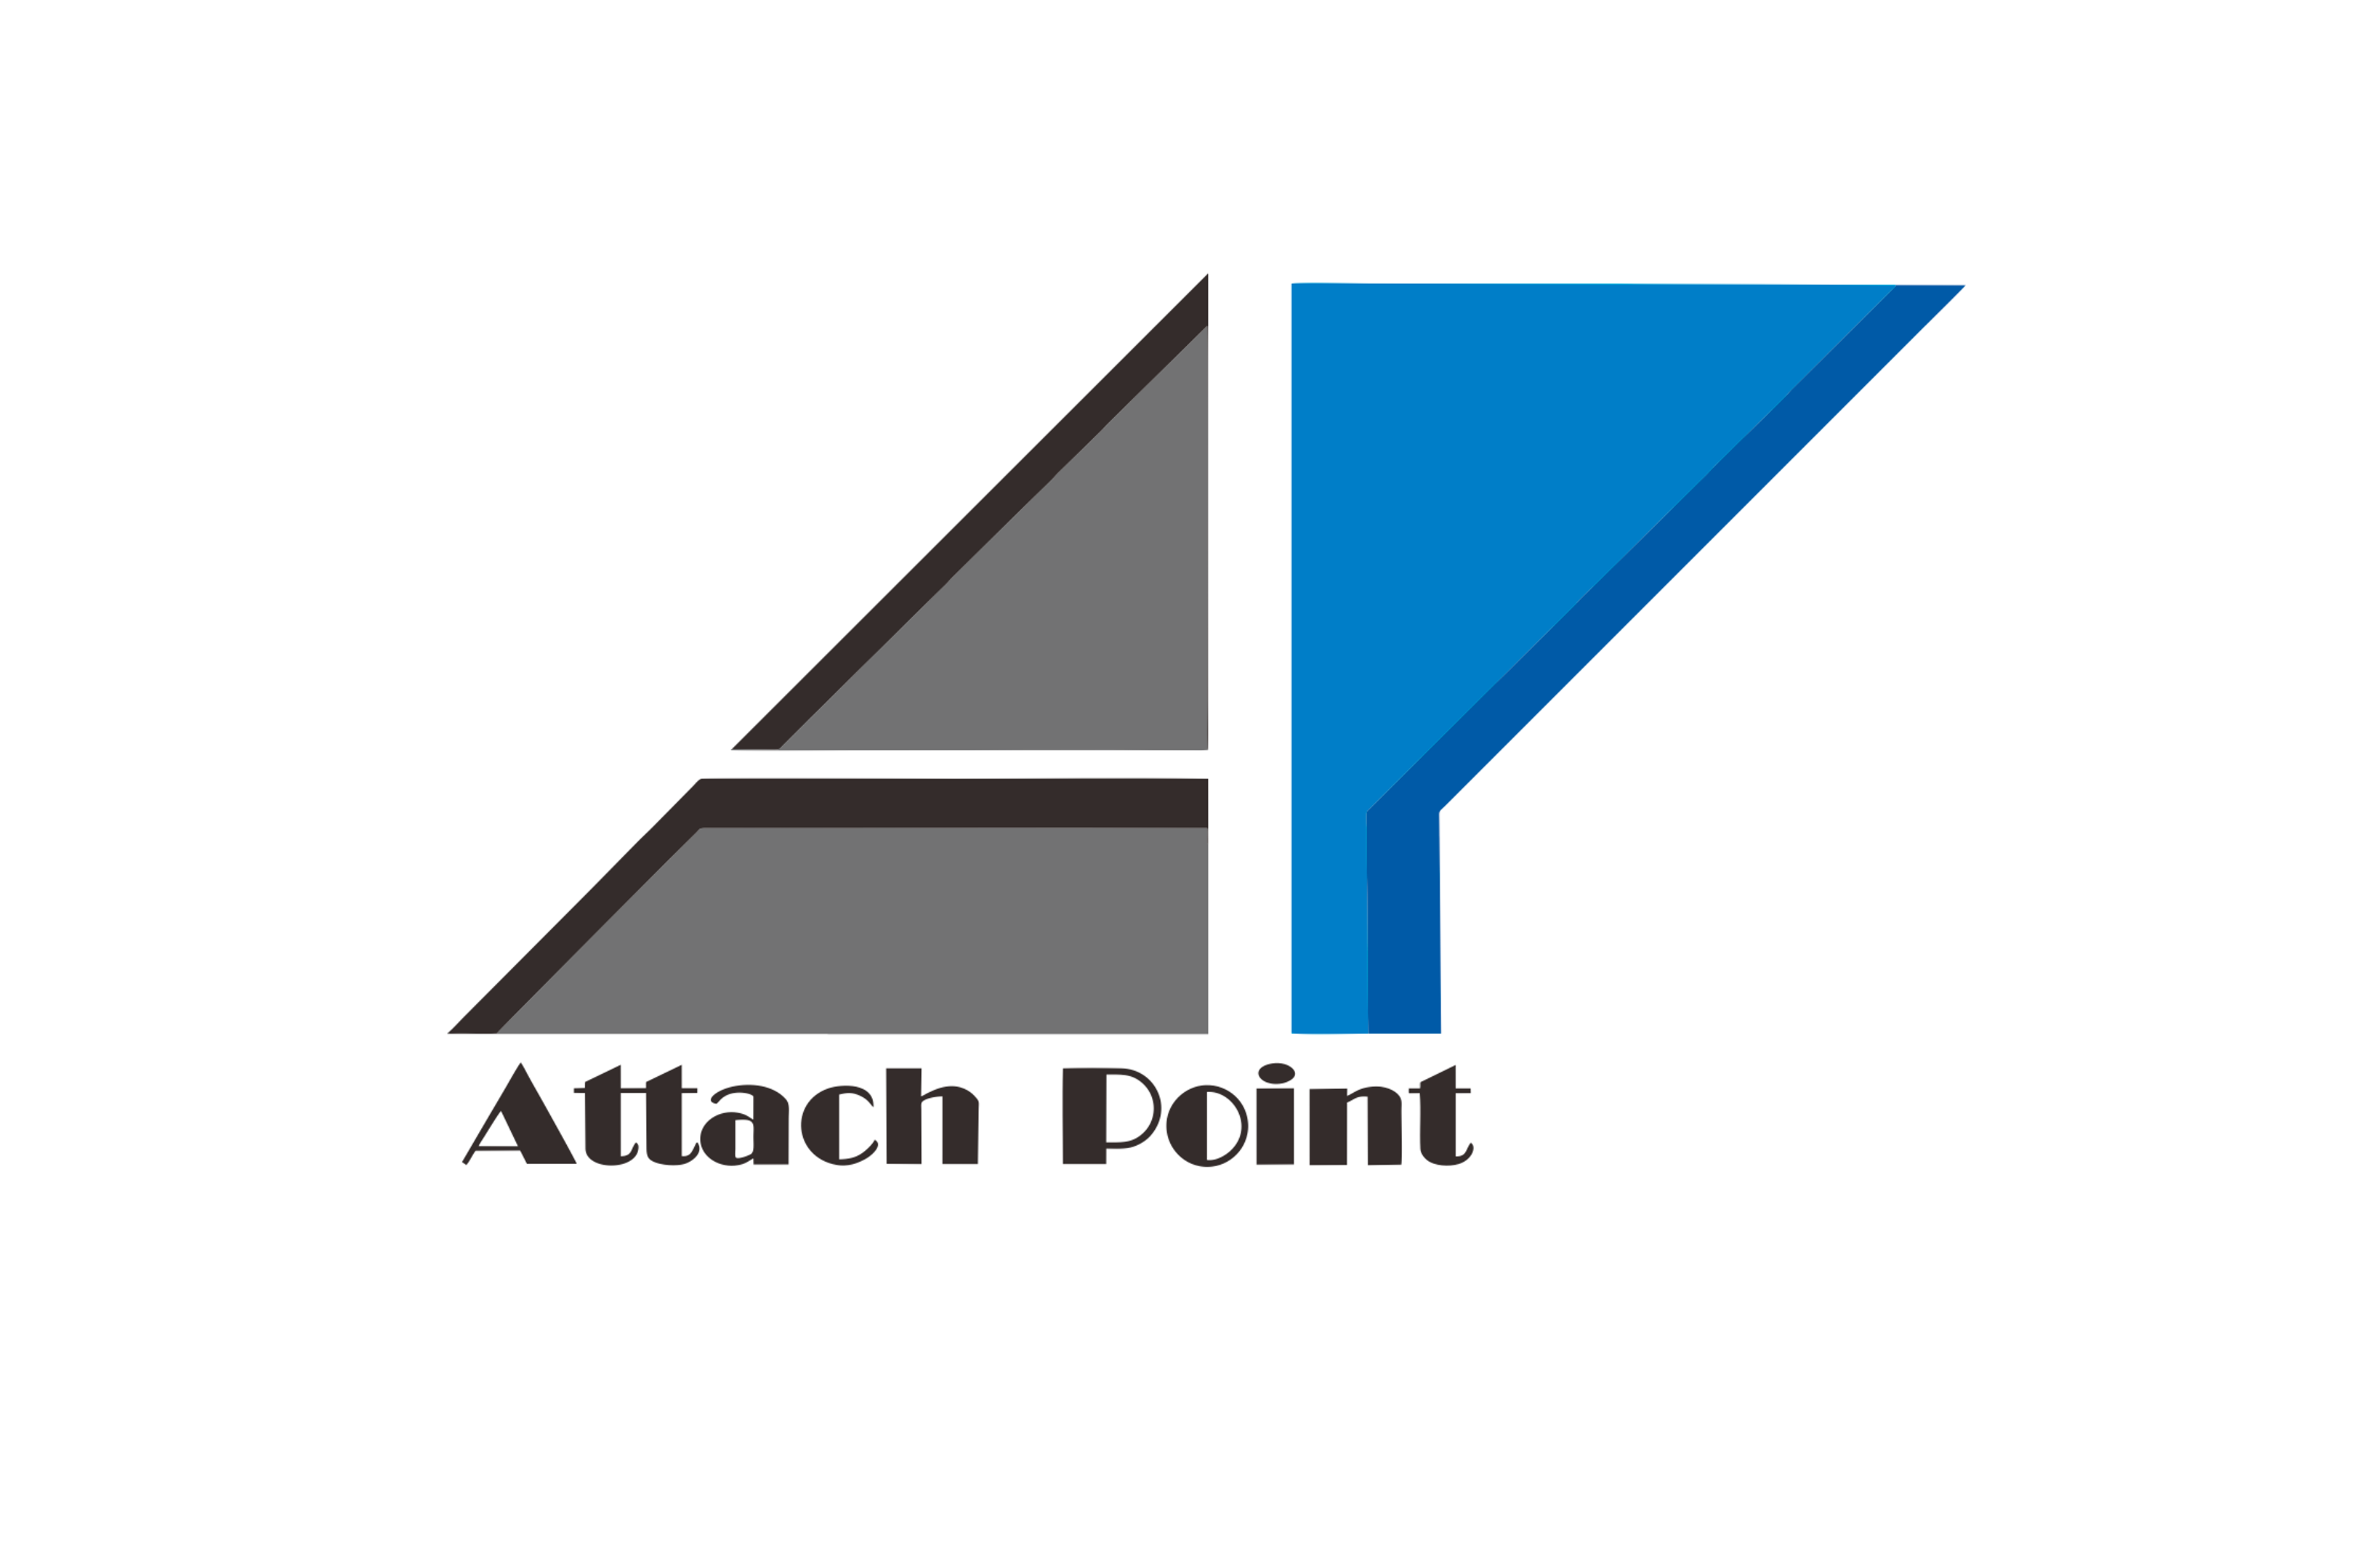 Attach Point